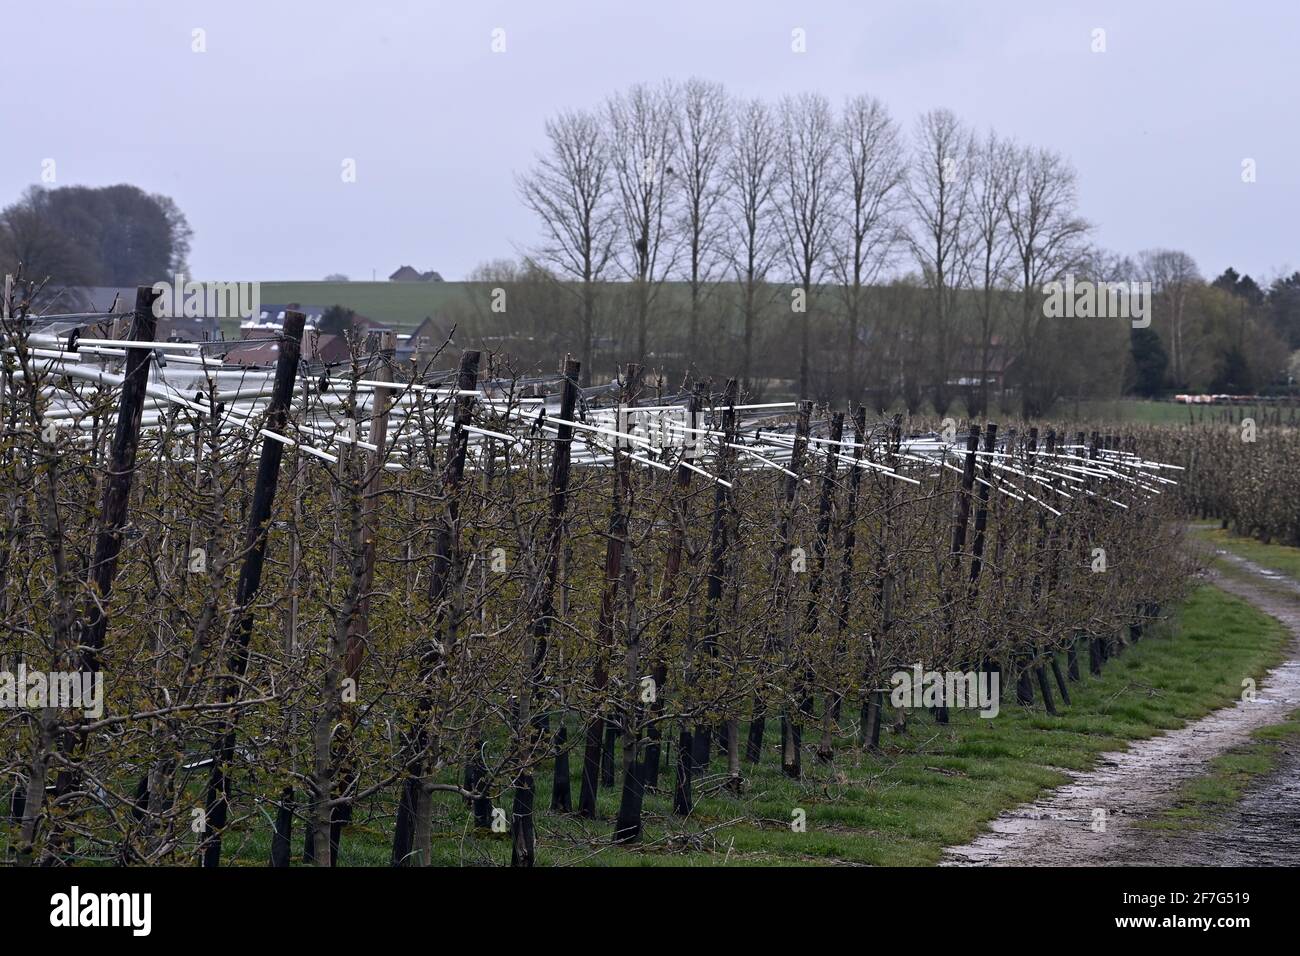 La ilustración muestra árboles frutales en un huerto en Kortenaken, miércoles 07 de abril de 2021. Las condiciones climáticas con bajas temperaturas son difíciles para la fruta Foto de stock